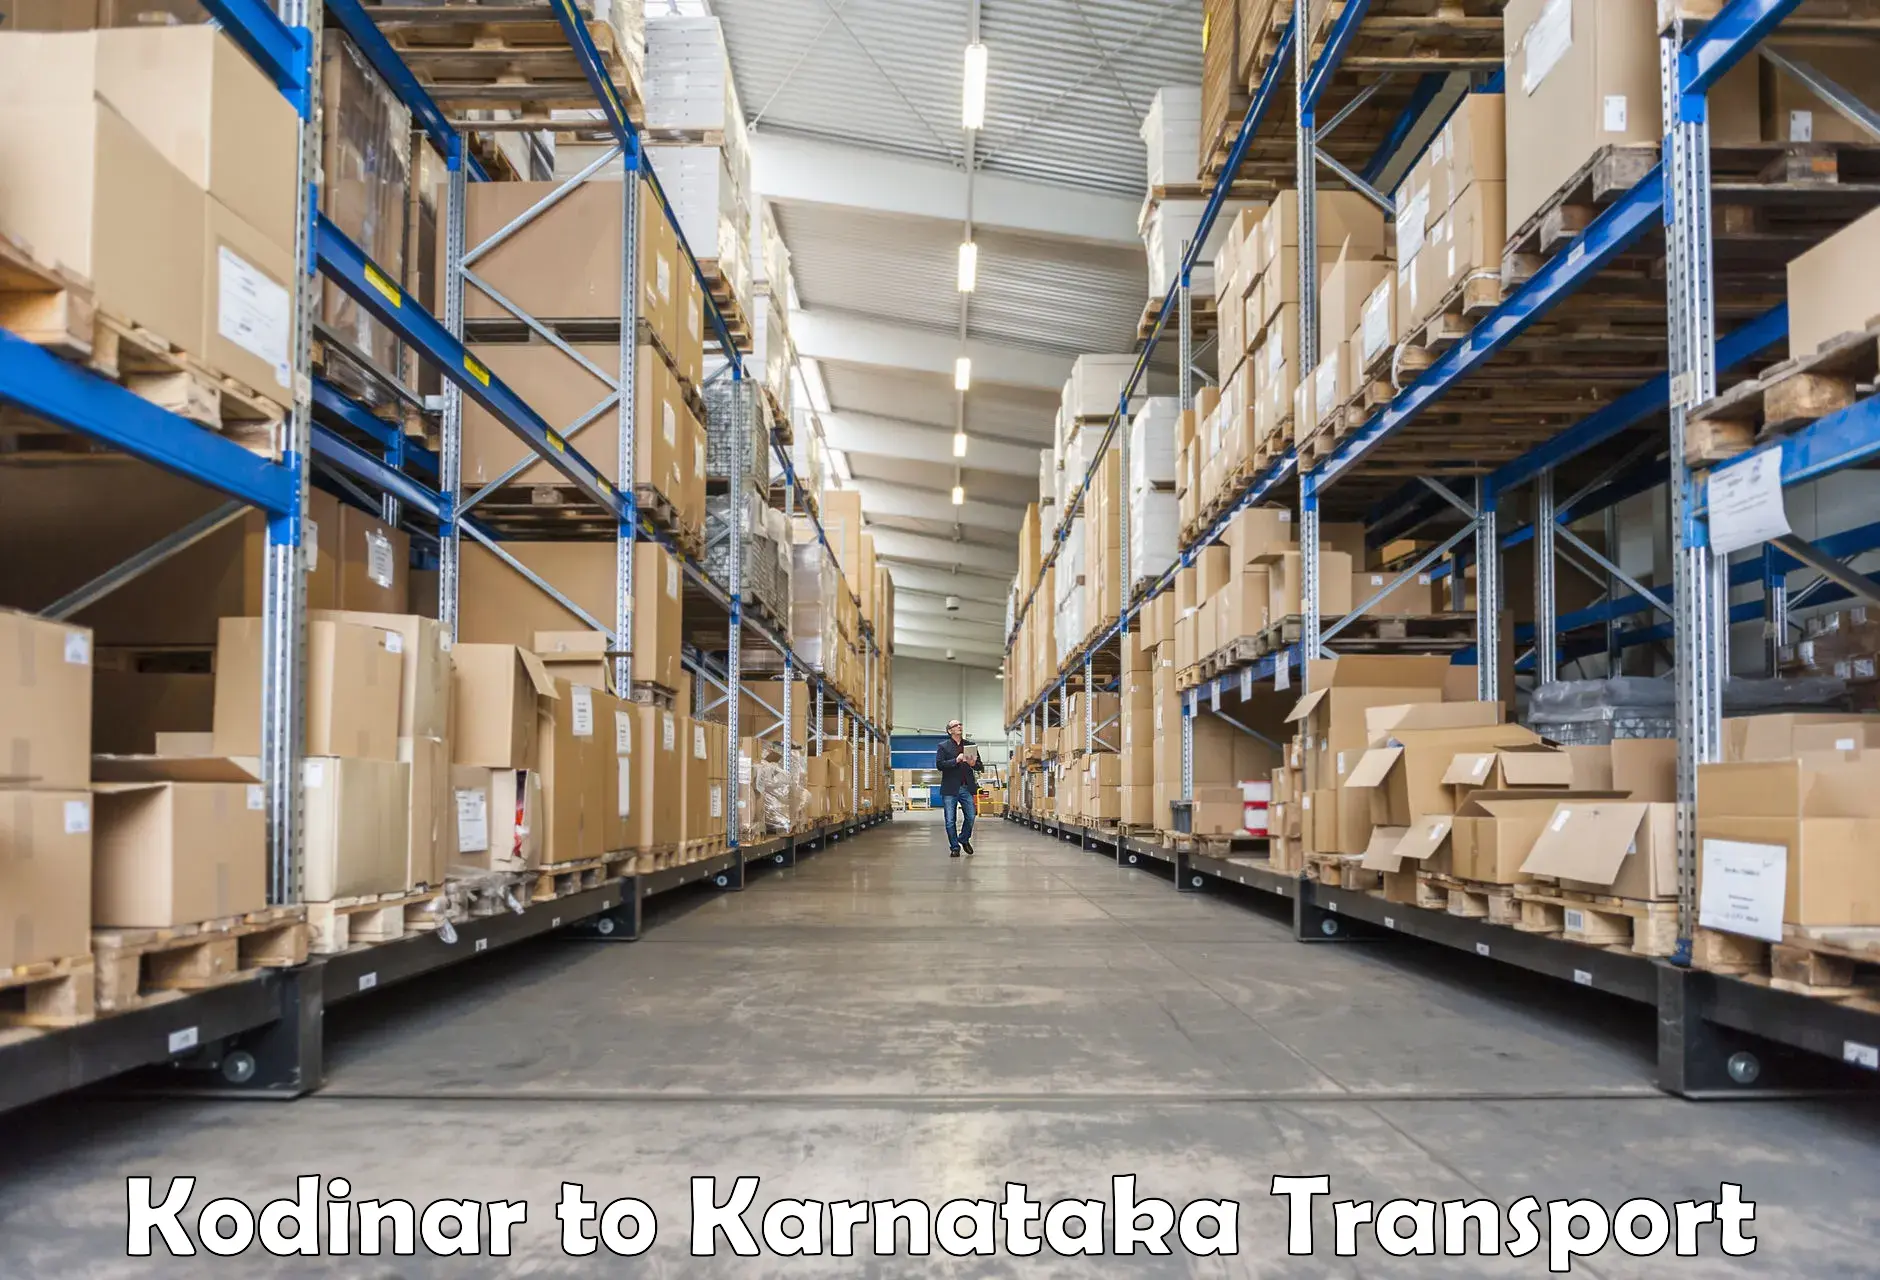 Truck transport companies in India Kodinar to IIIT Dharward